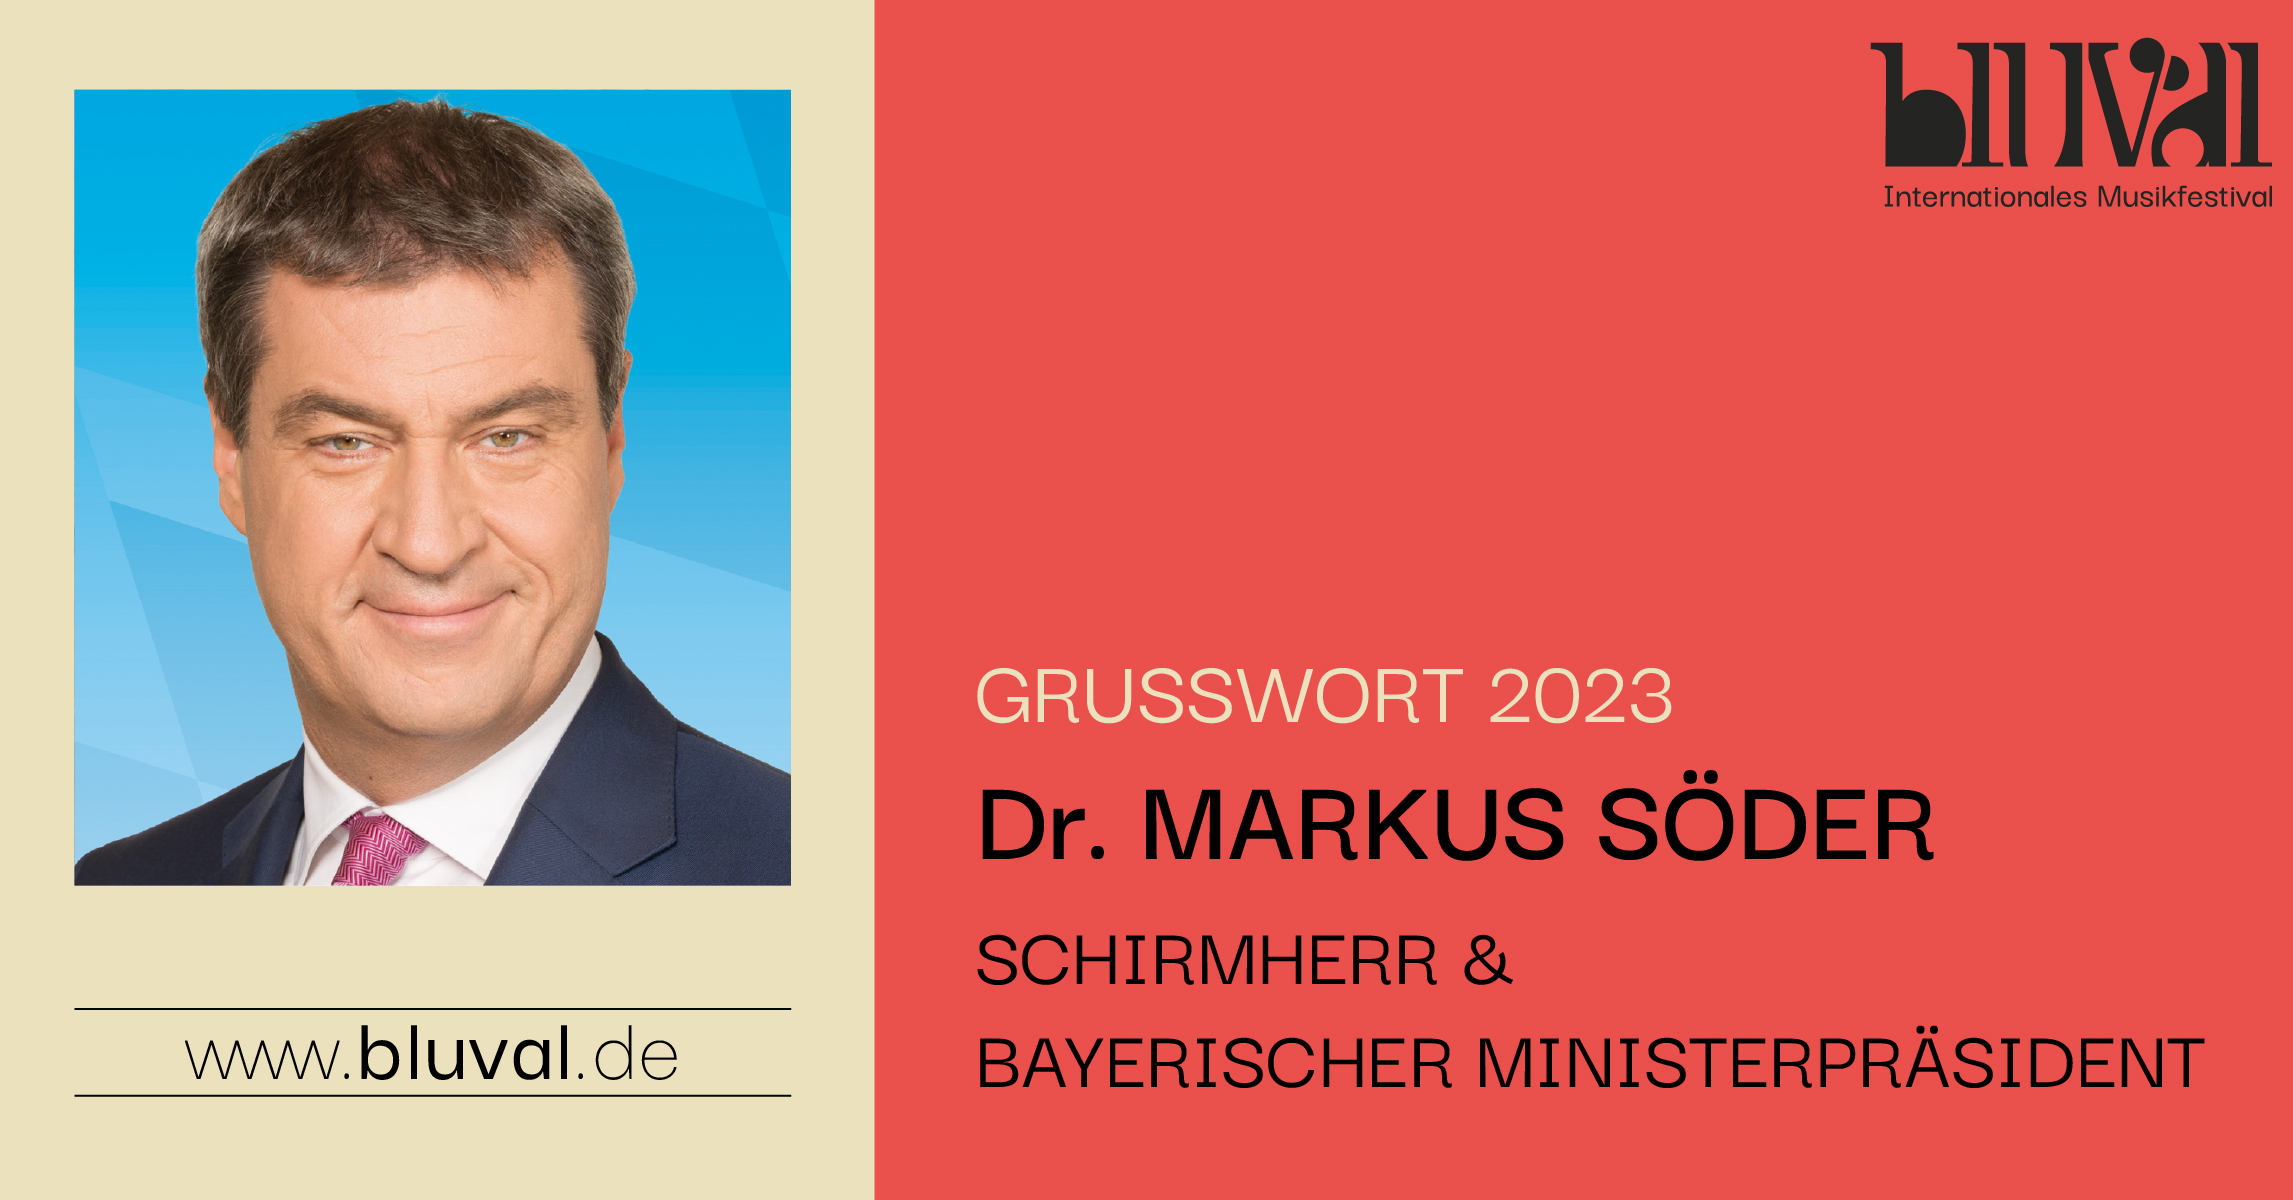 Dr. Markus Söder - Grußwort 2023